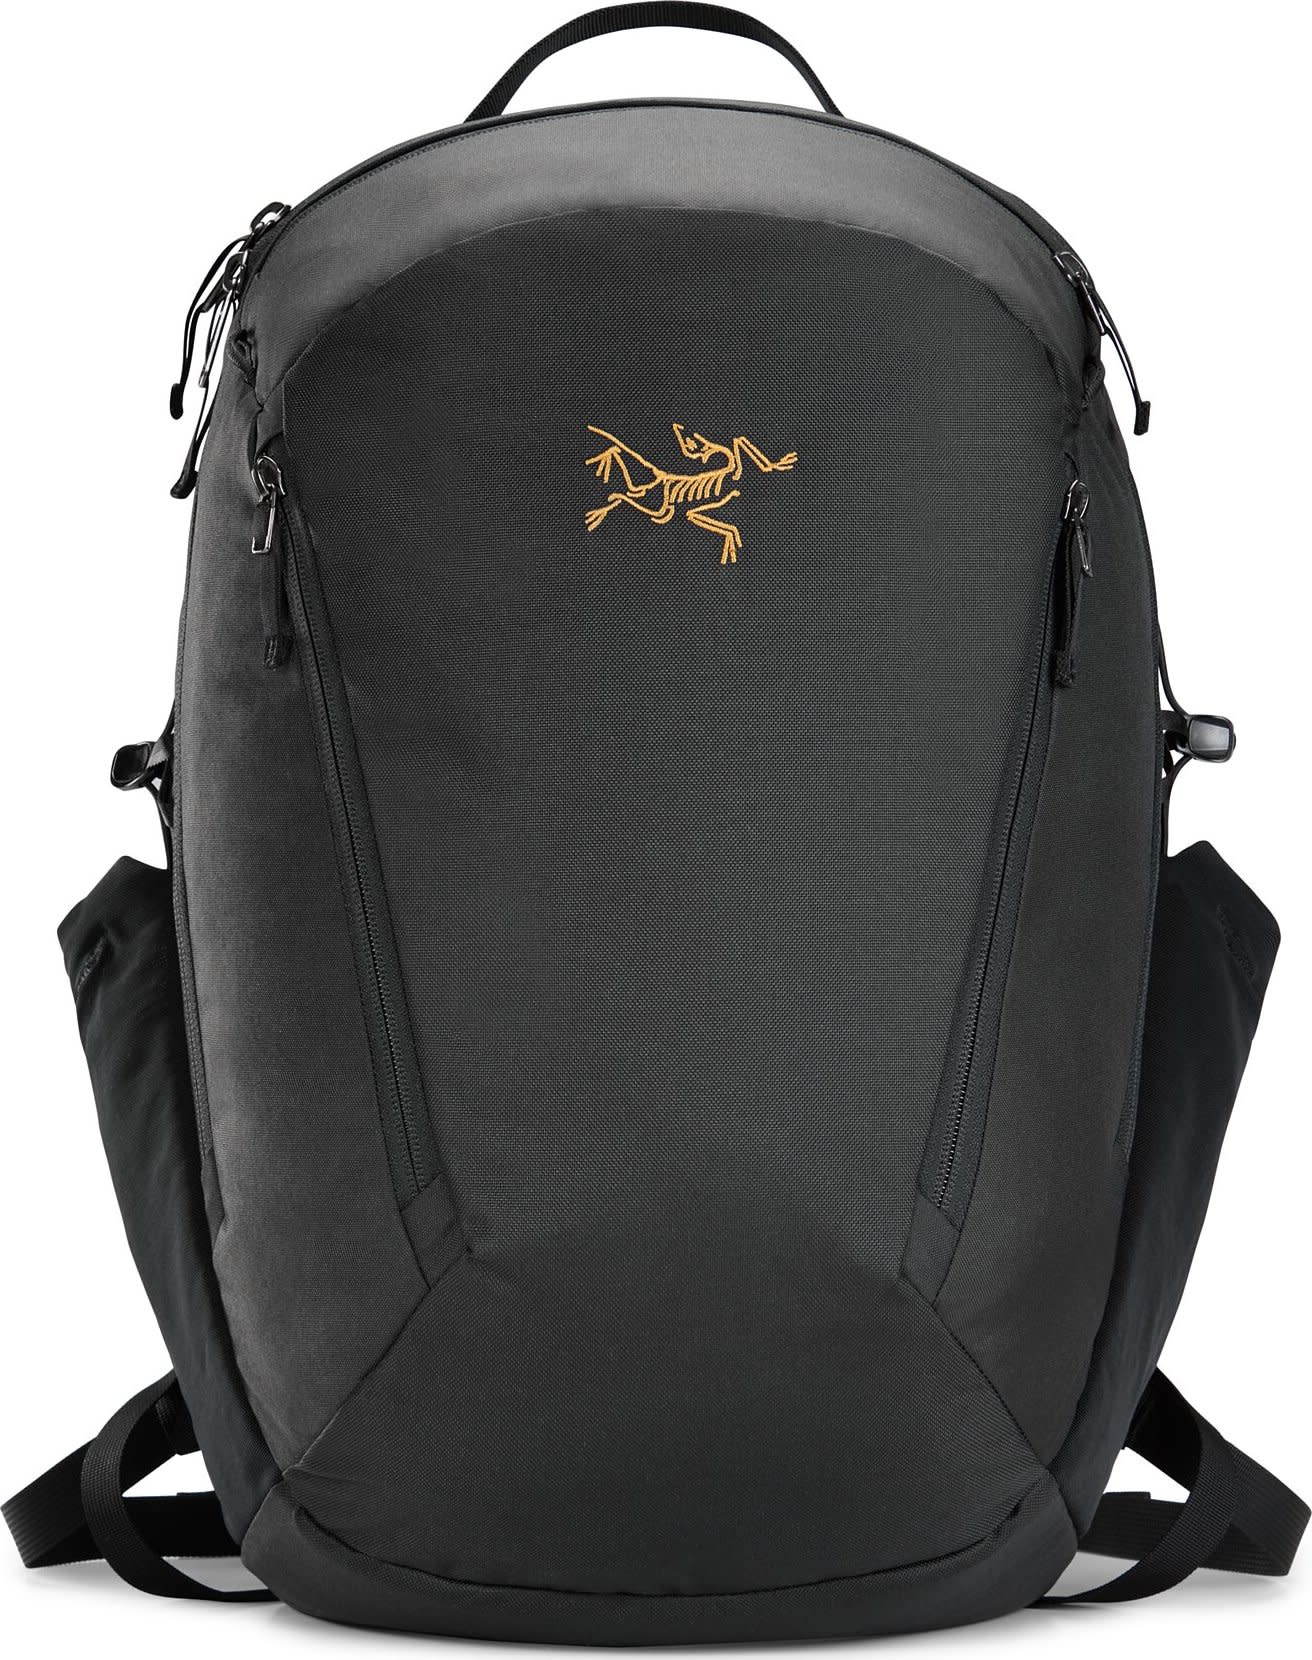 Mantis 26L Backpack Black